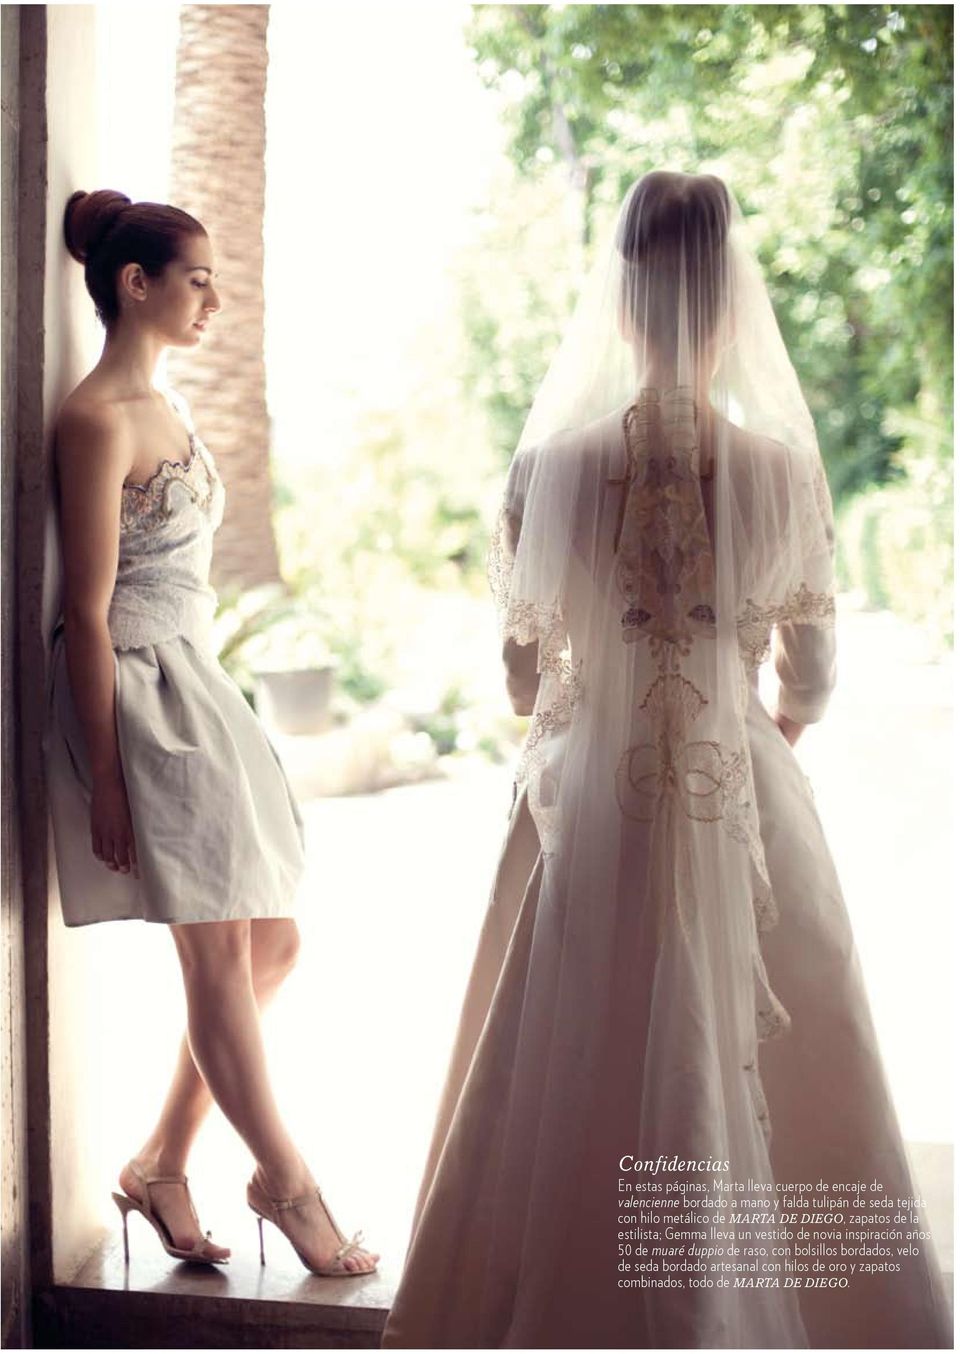 Gemma lleva un vestido de novia inspiración años 50 de muaré duppio de raso, con bolsillos